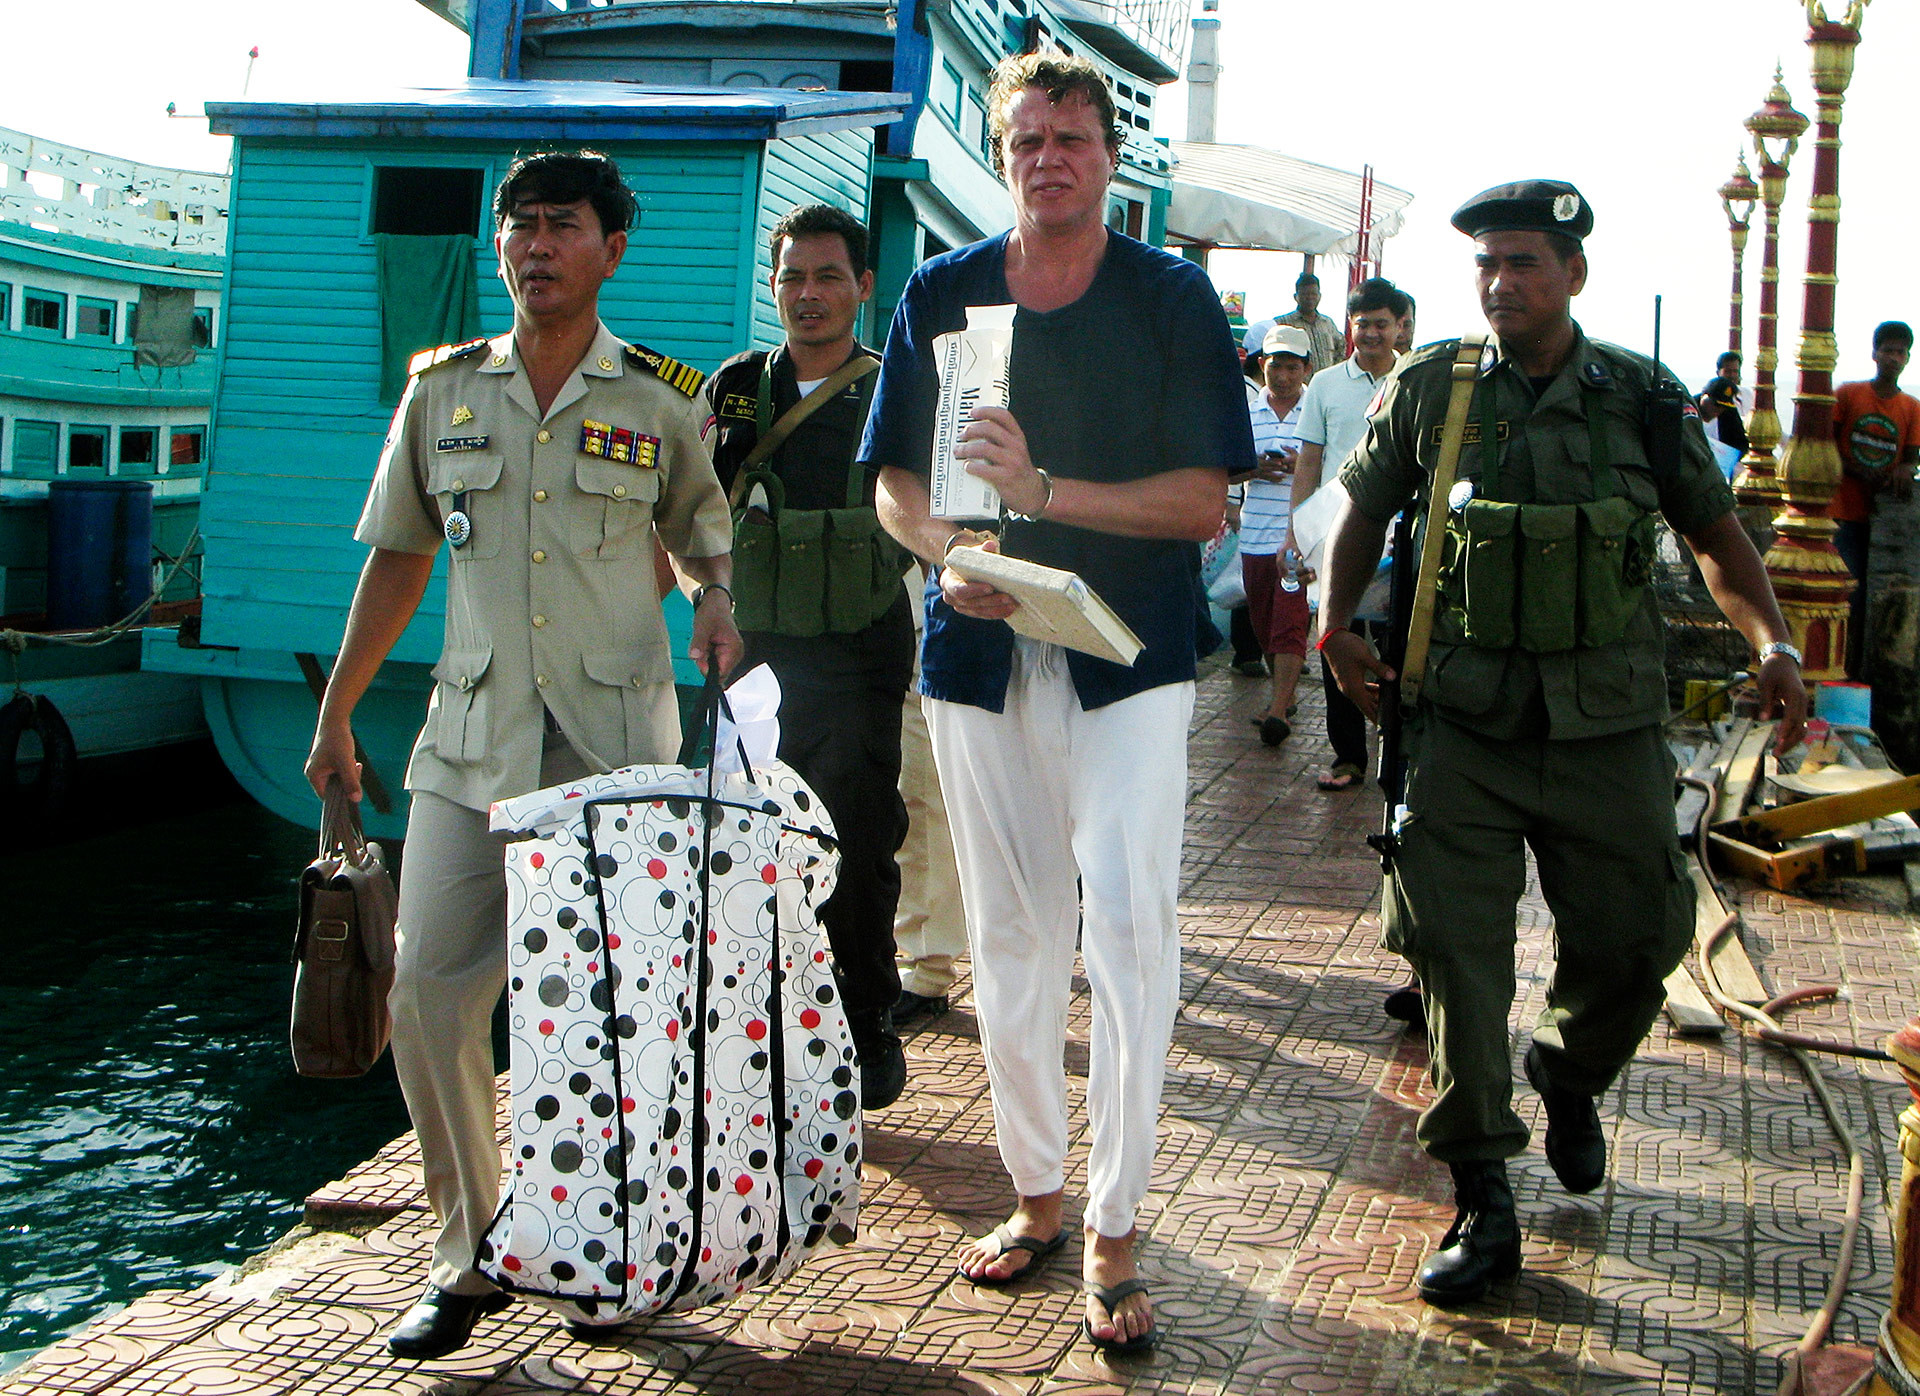 Polonskij wird von der Kambodschanischen Polizei aufgegriffen. 11. November 2013
